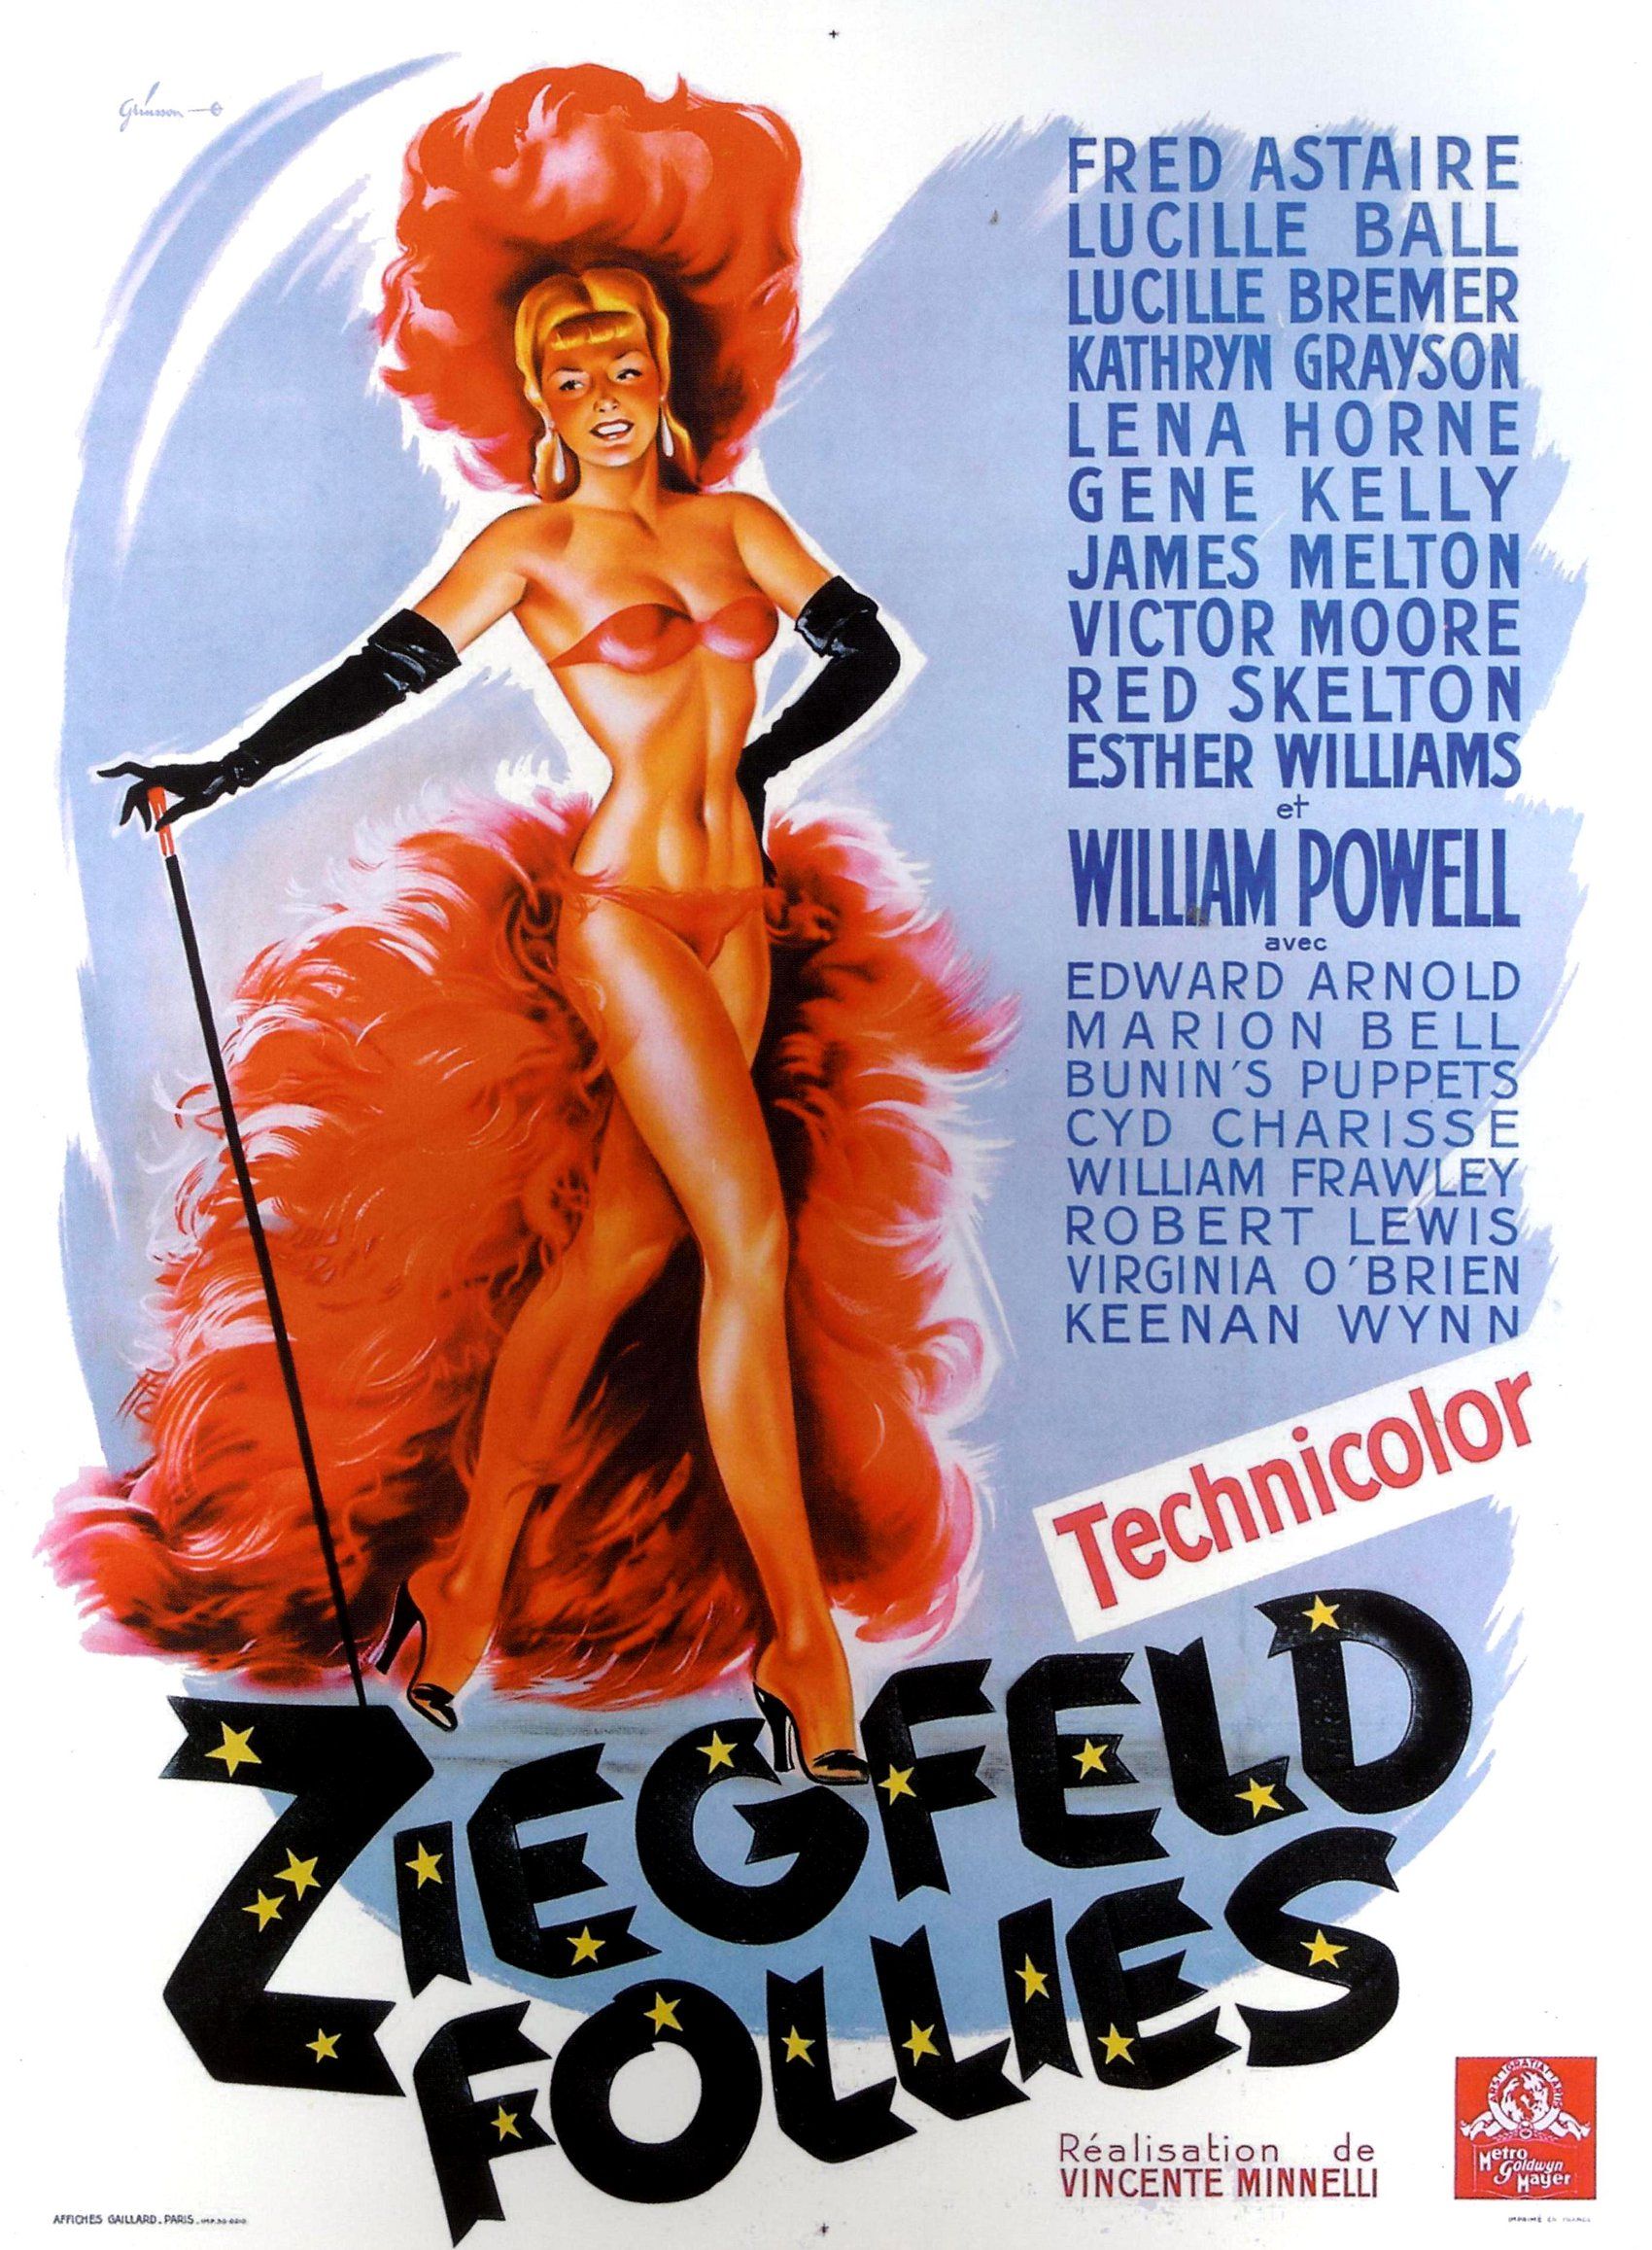 Ziegfeld Follies Myrna Darby Monochrome Photo Print 02 A4 